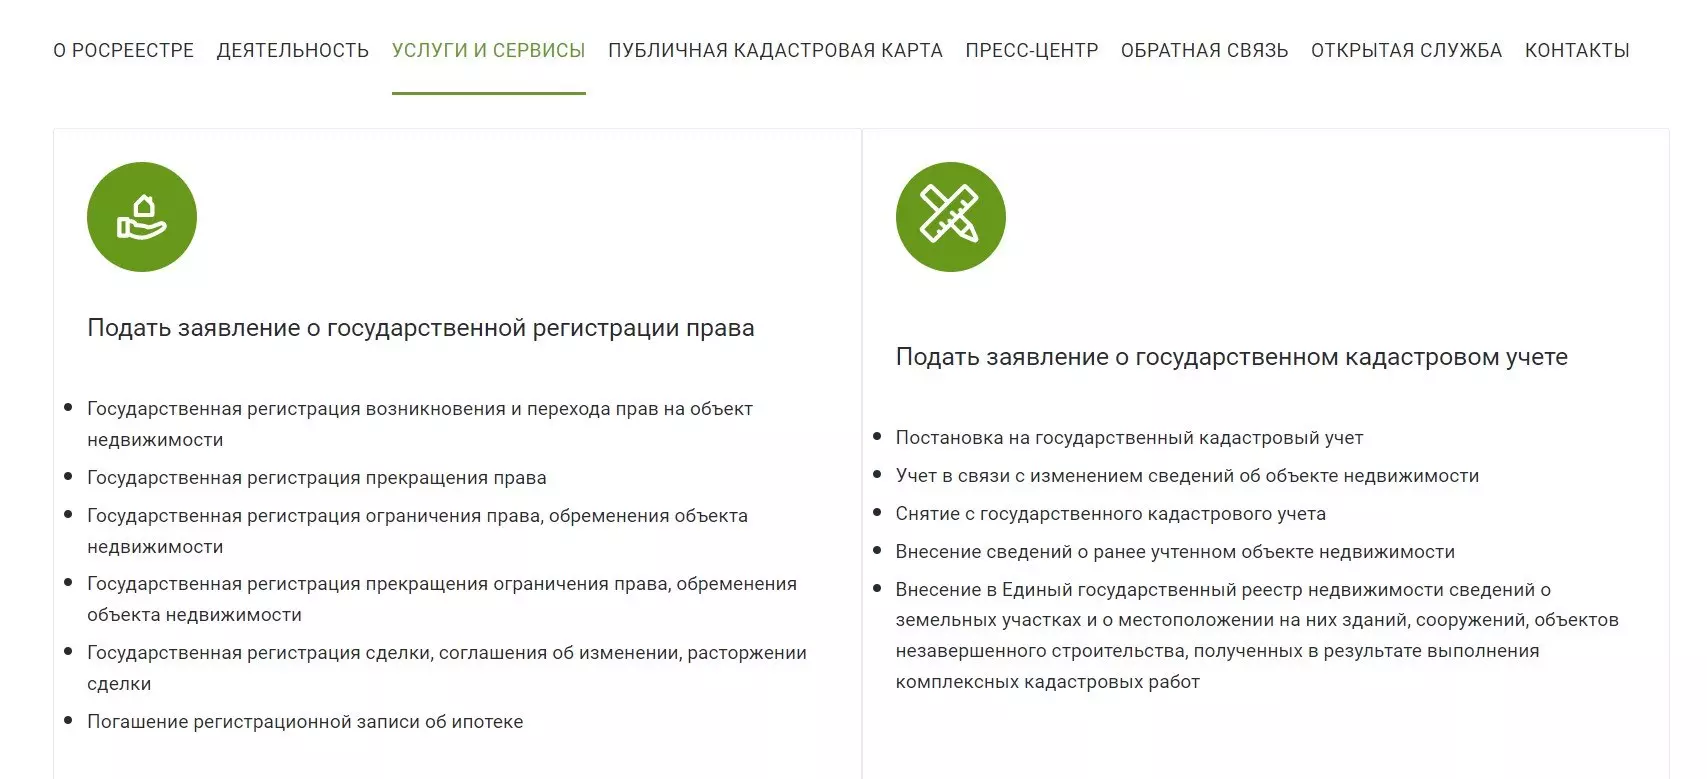 Офоромить заявление о регистрации права собственности можно на сайте Росреестра. Фото: rosreestr.gov.ru